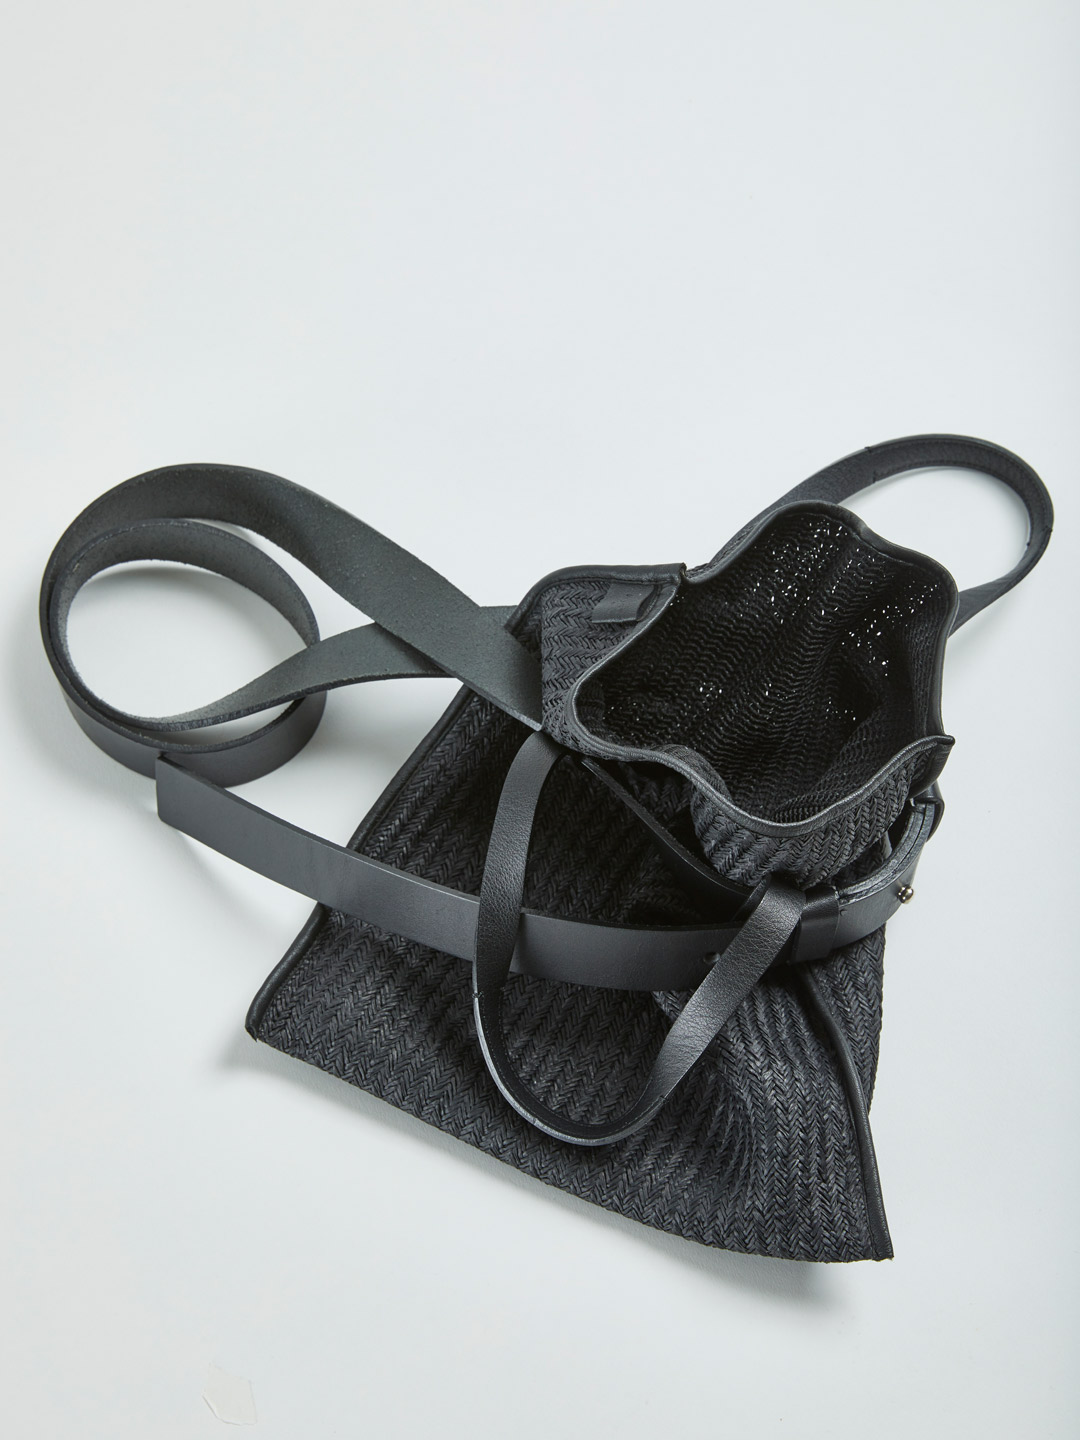 WASHI Paper Knit Bag (S) - Black